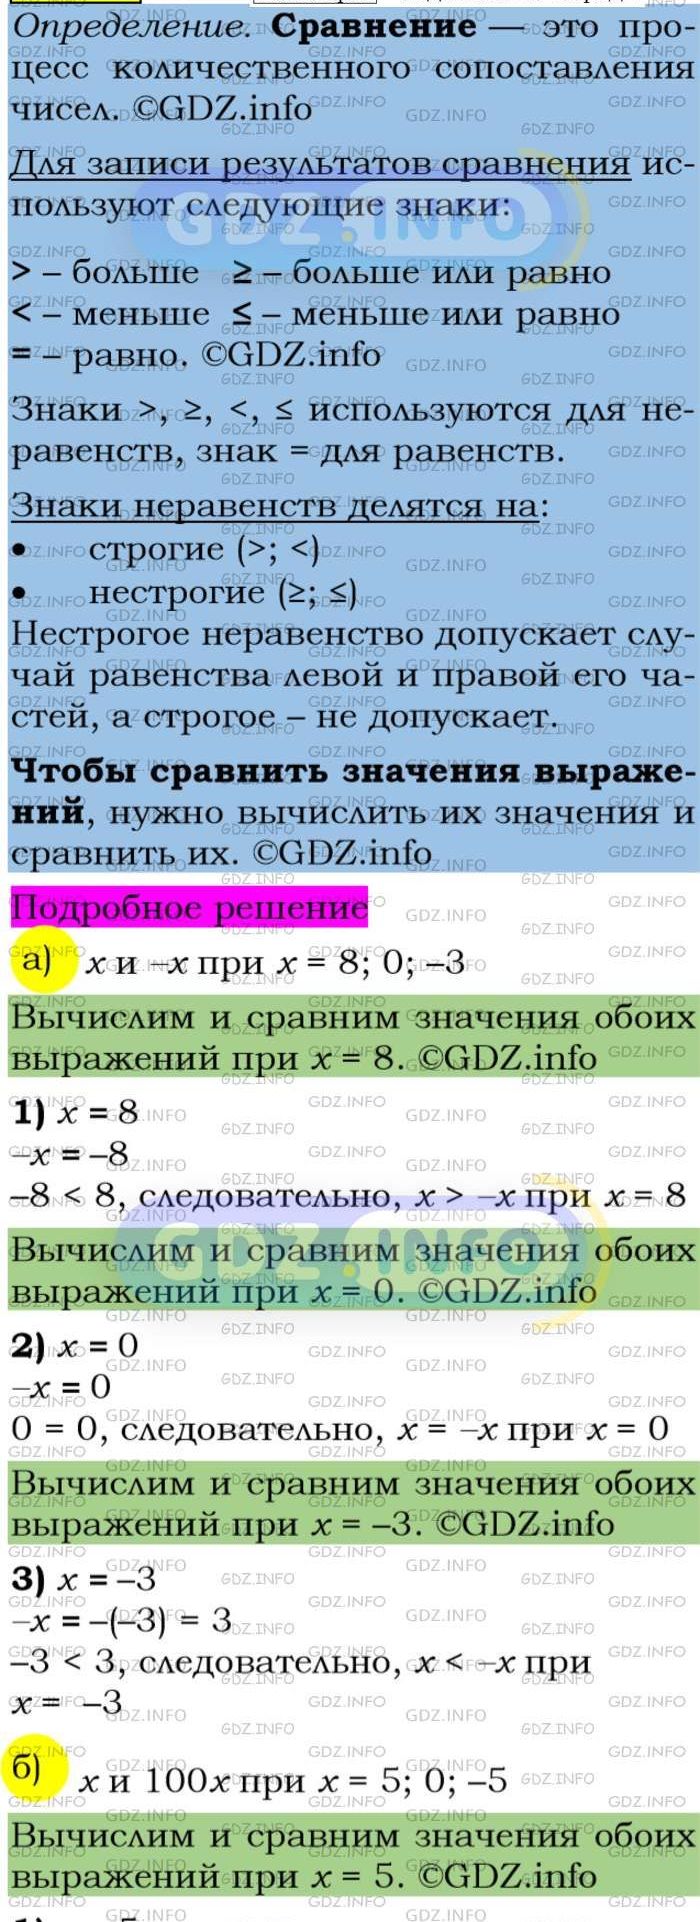 Фото подробного решения: Номер задания №71 из ГДЗ по Алгебре 7 класс: Макарычев Ю.Н.